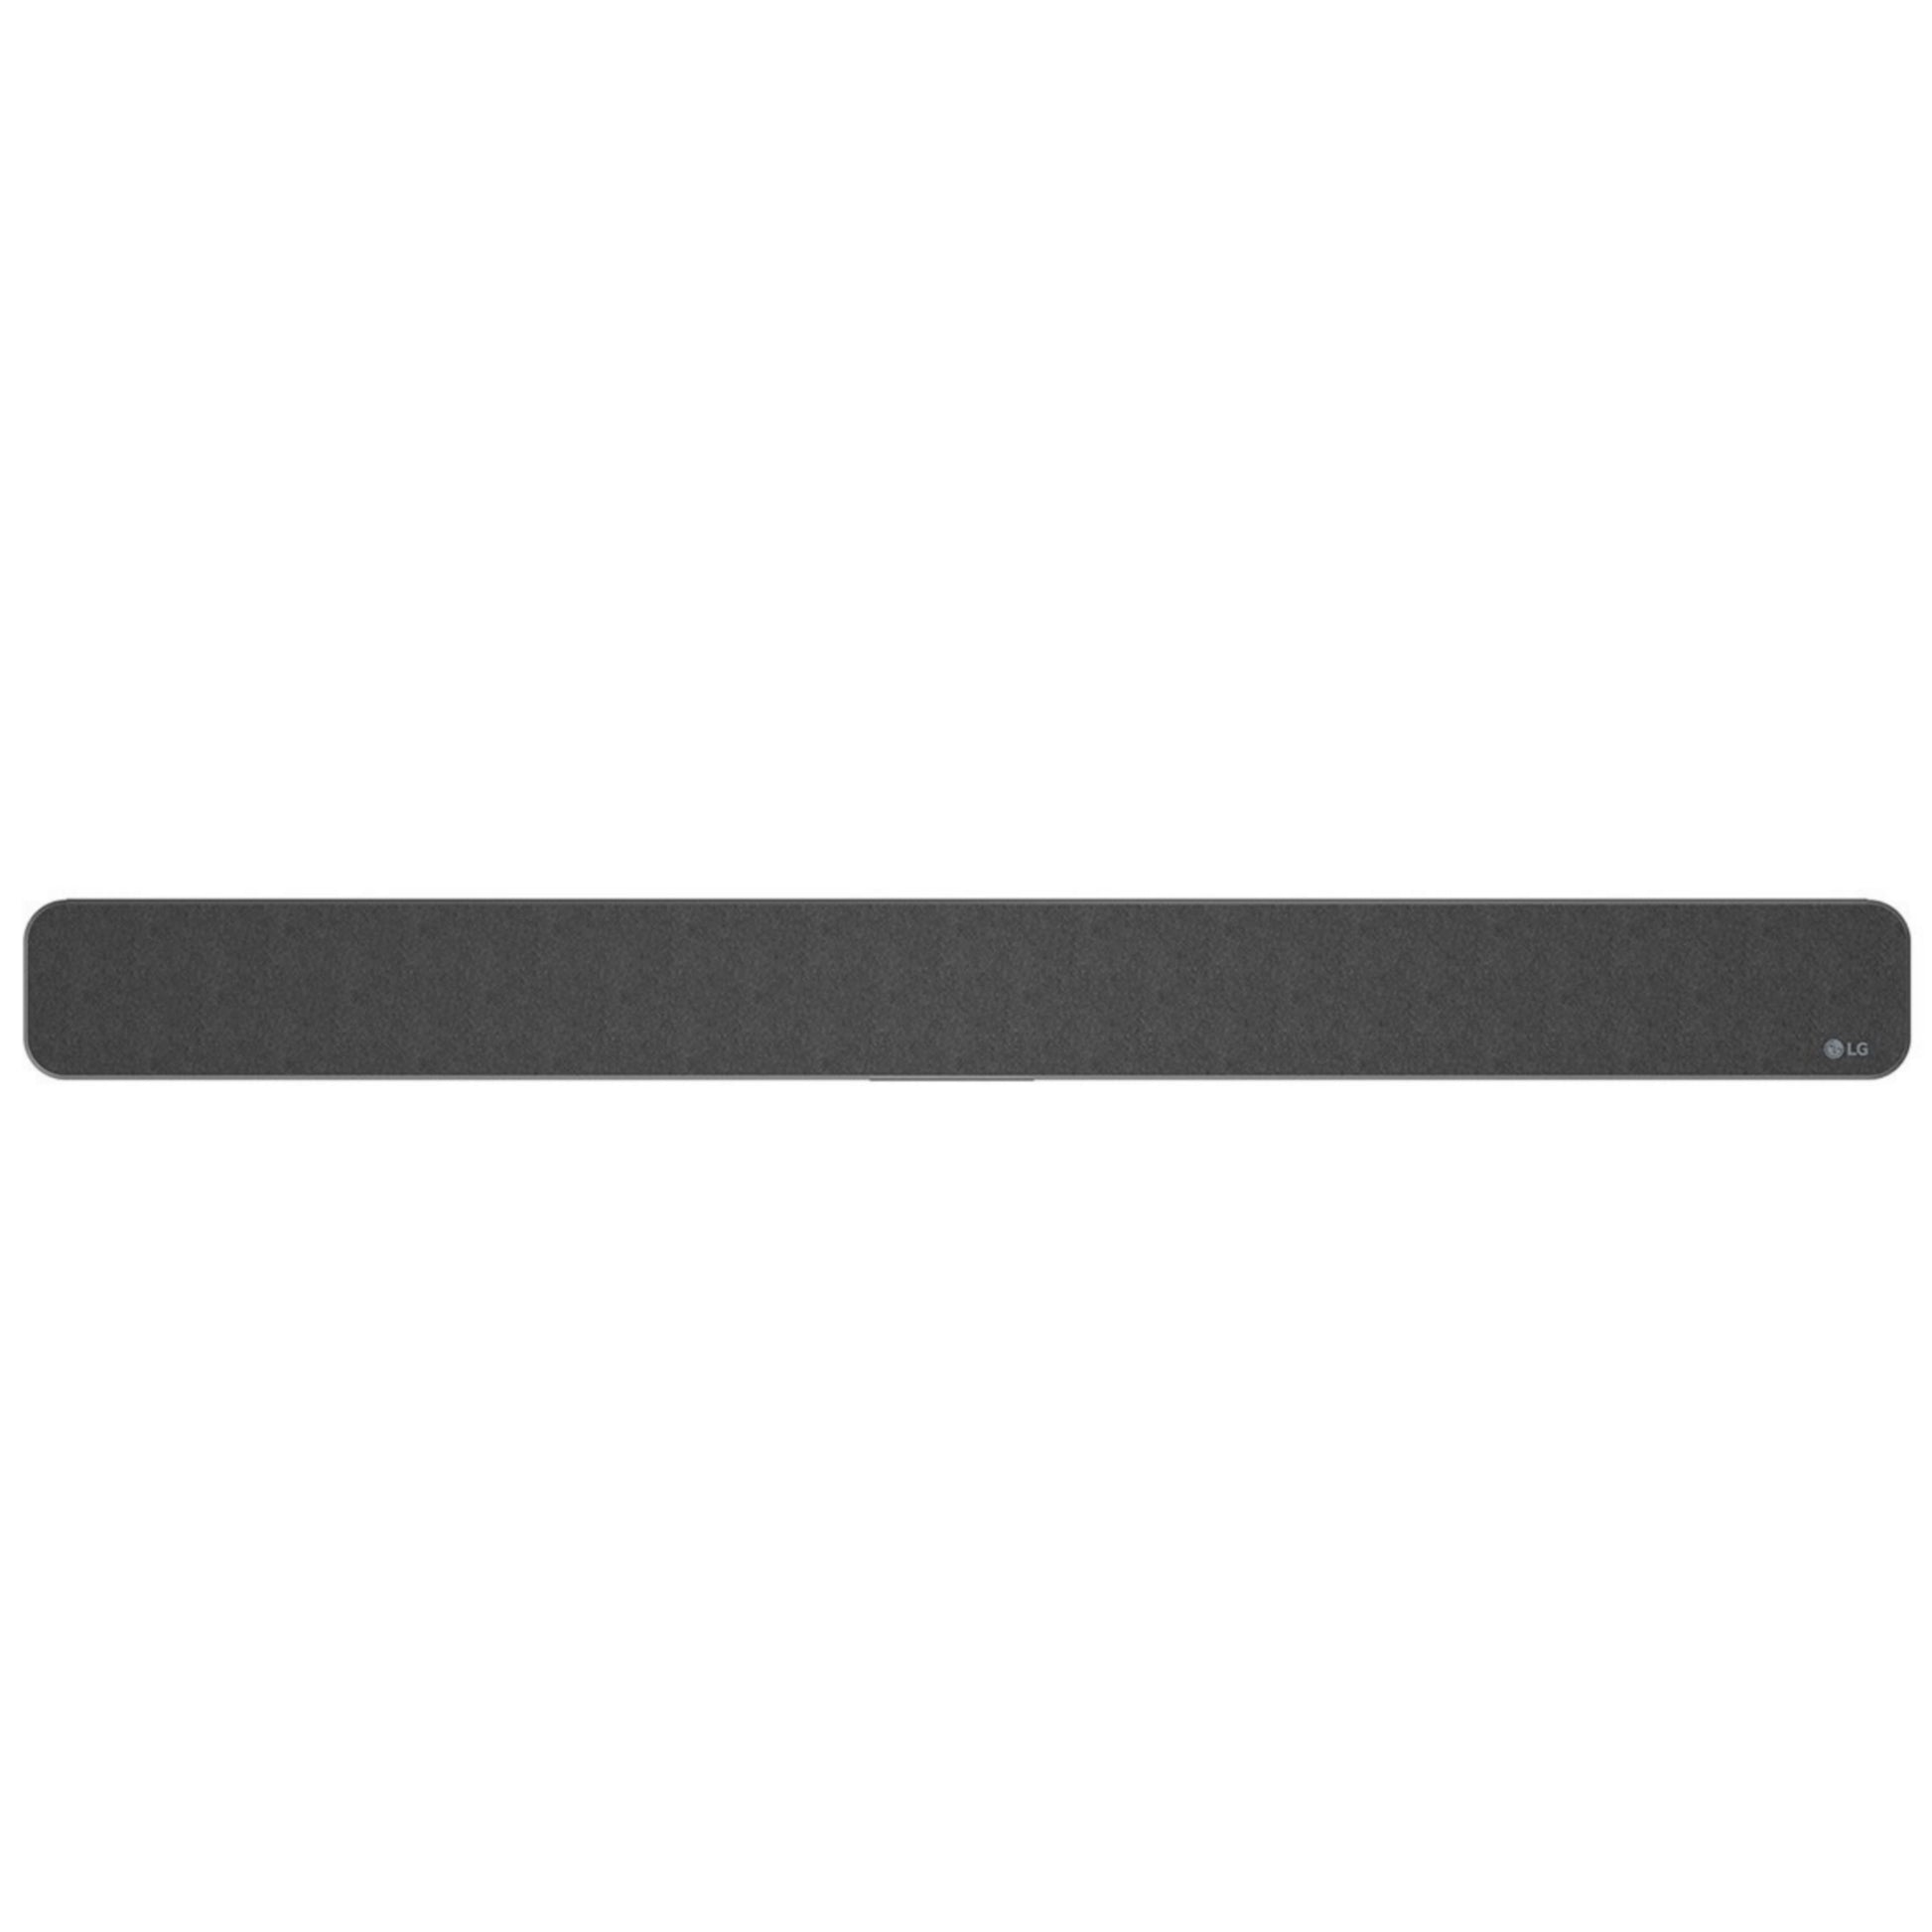 Top View LG SN5Y 2.1Ch Bluetooth Sound Bar